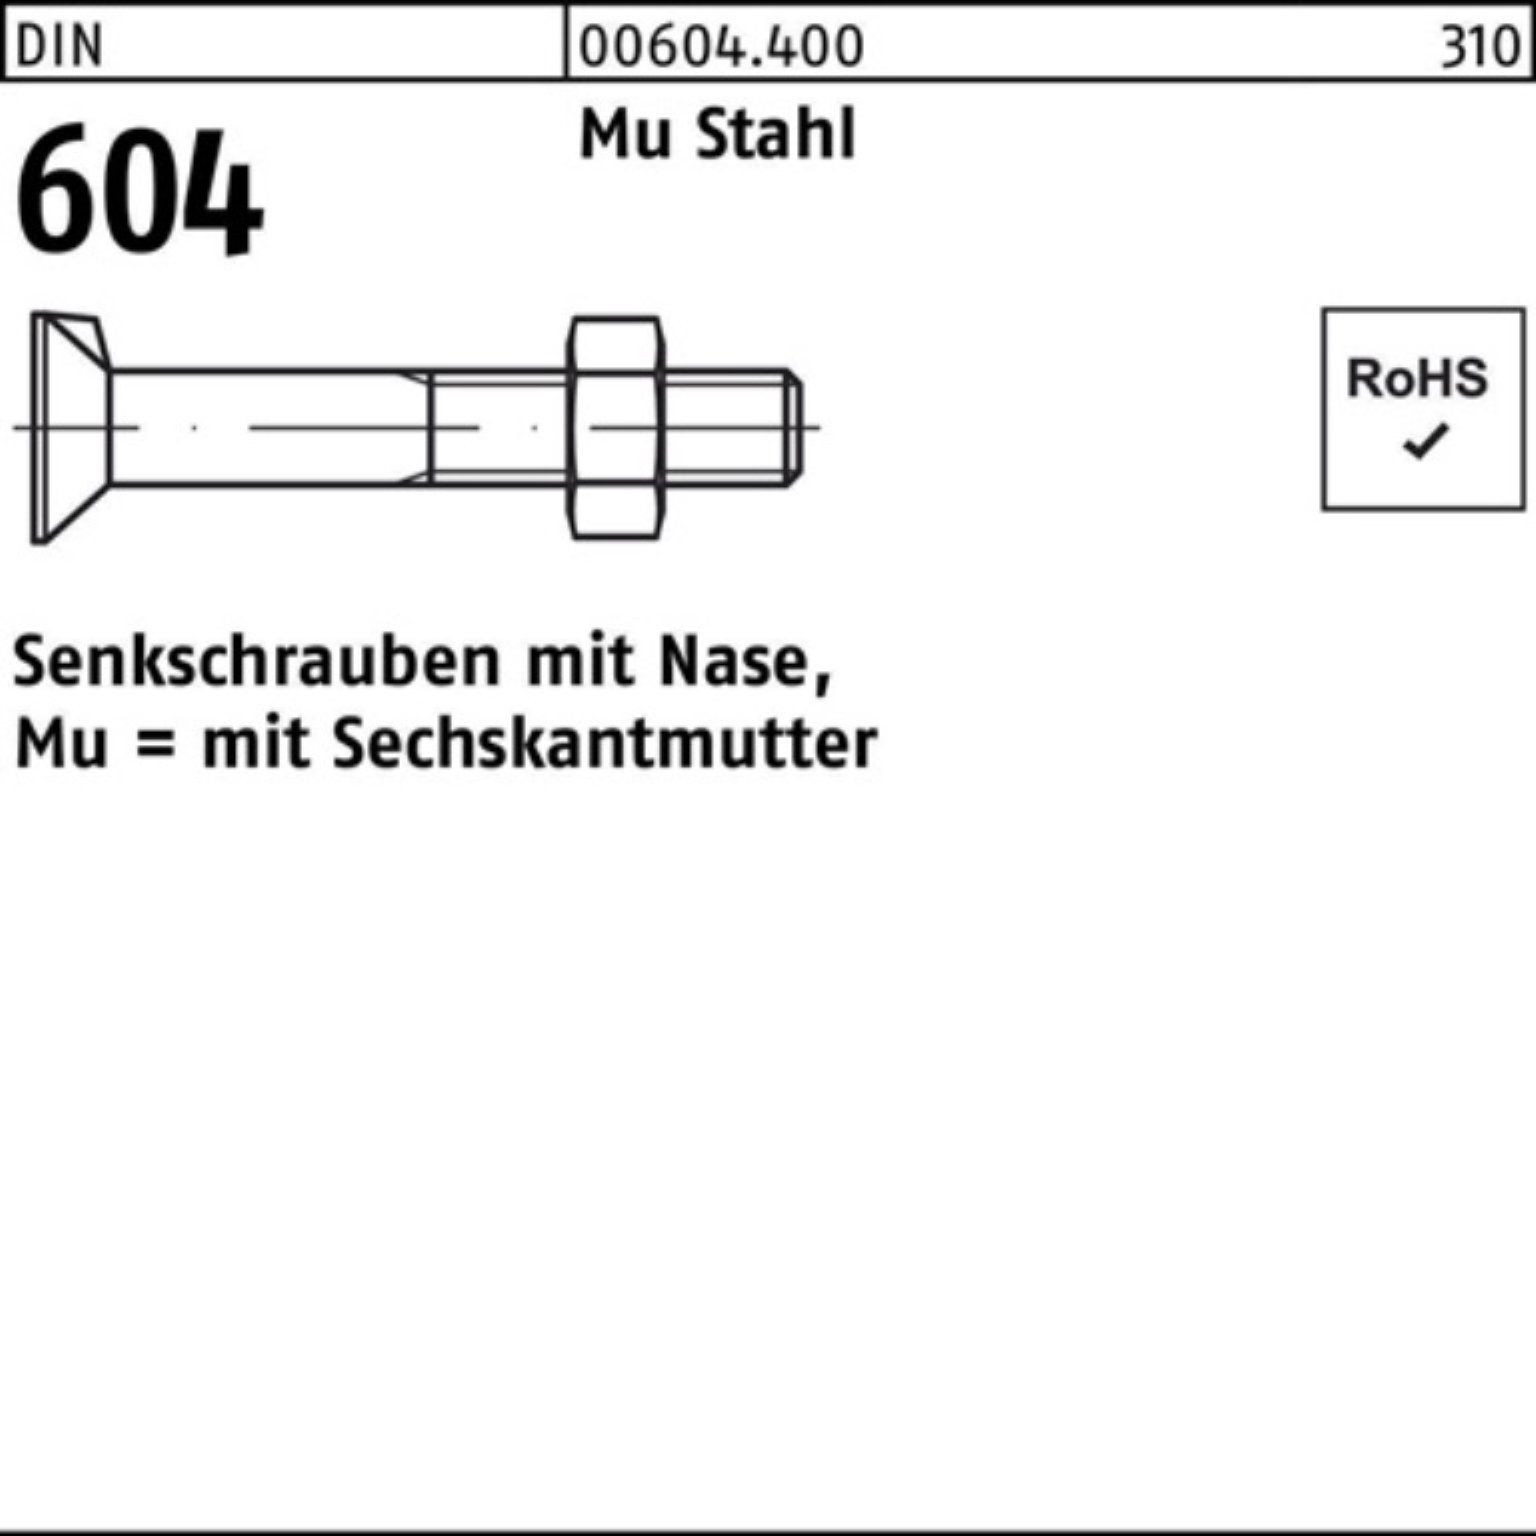 Reyher Senkschraube 100er Pack Senkschraube DIN 604 Nase/6-ktmutter M20x 140 Mu Stahl 4.6